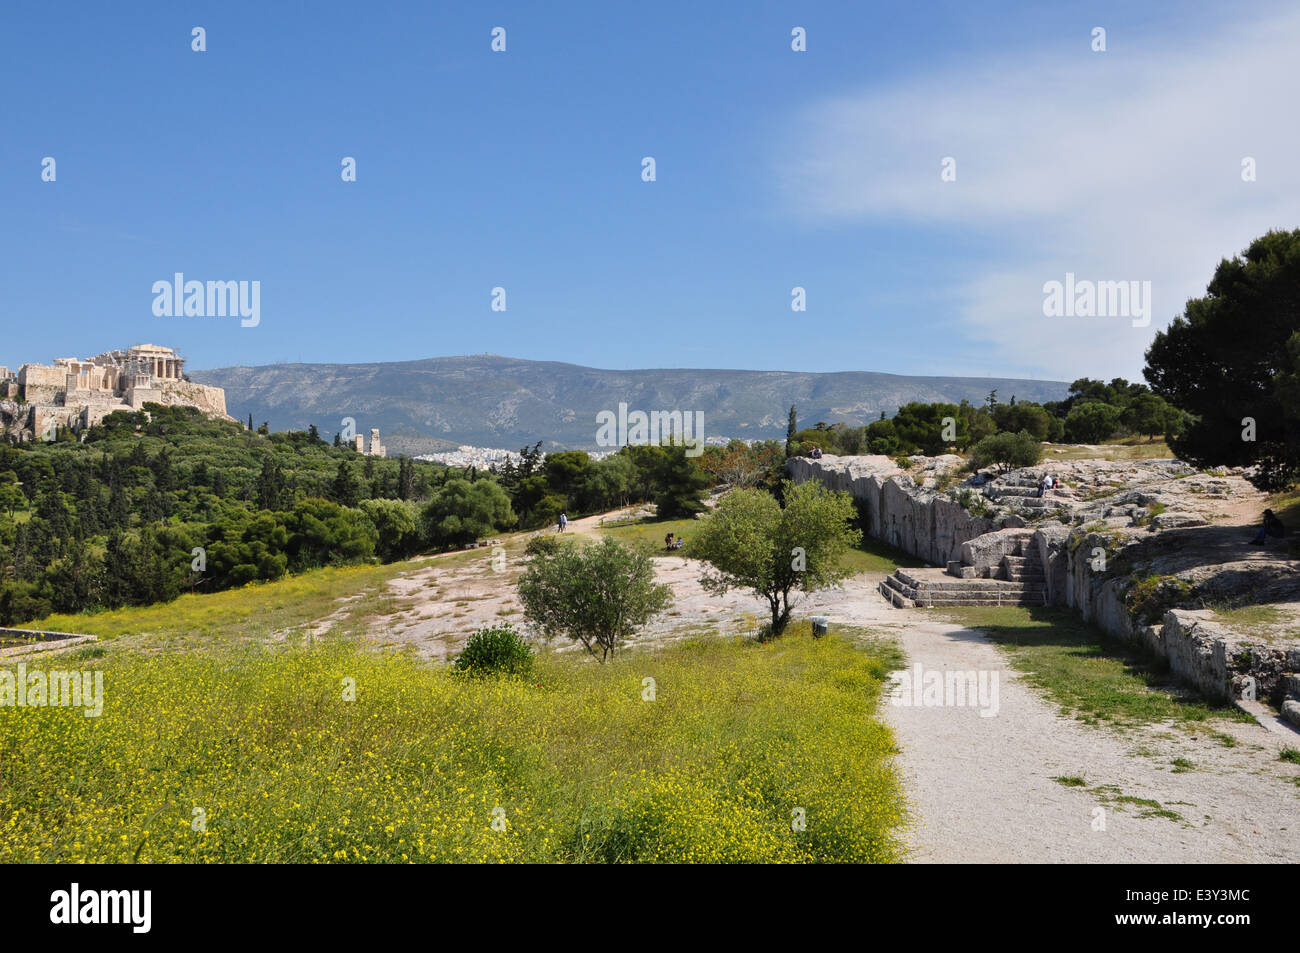 Pnyx monumento antiguo asamblea democrática de los ciudadanos atenienses con vistas a la Acrópolis. Atenas en primavera. Foto de stock